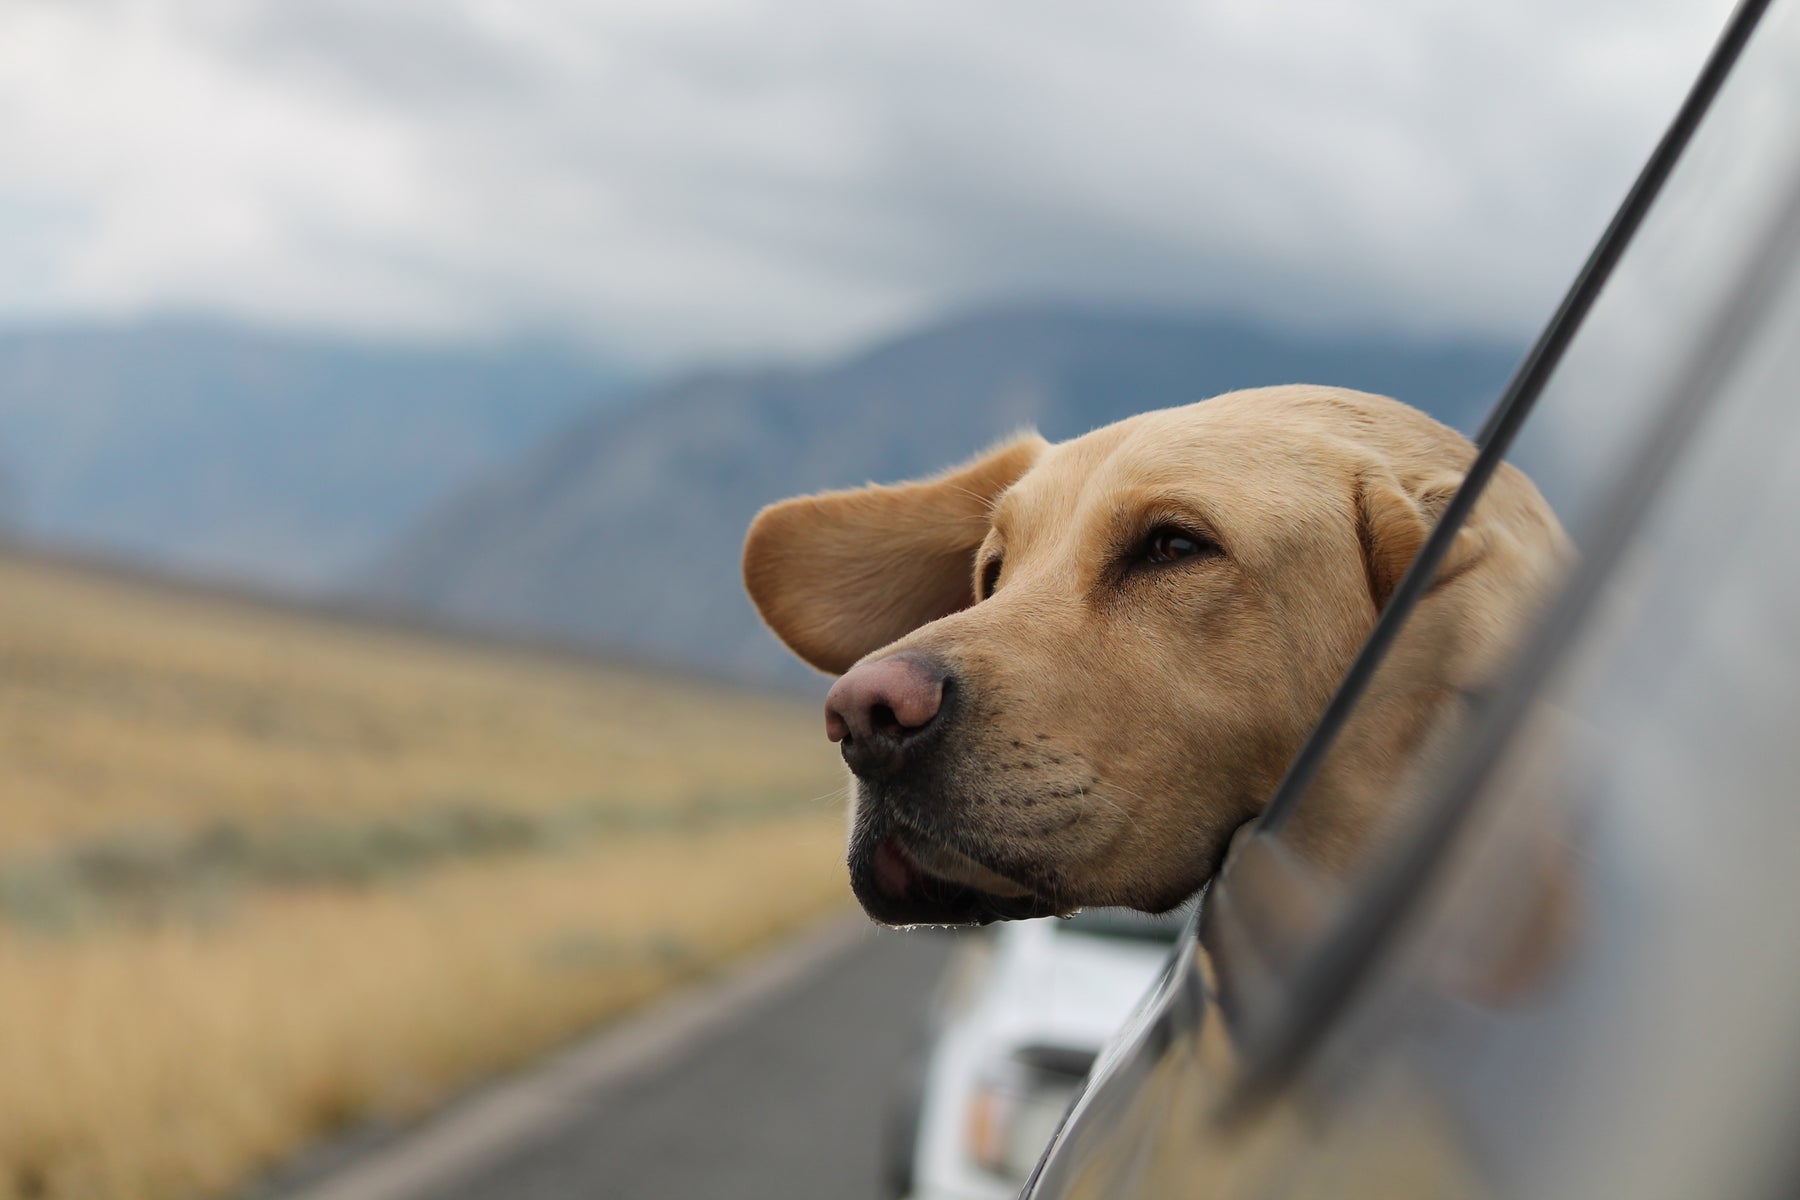 Perchè i cani mettono la testa fuori dal finestrino dell'auto?